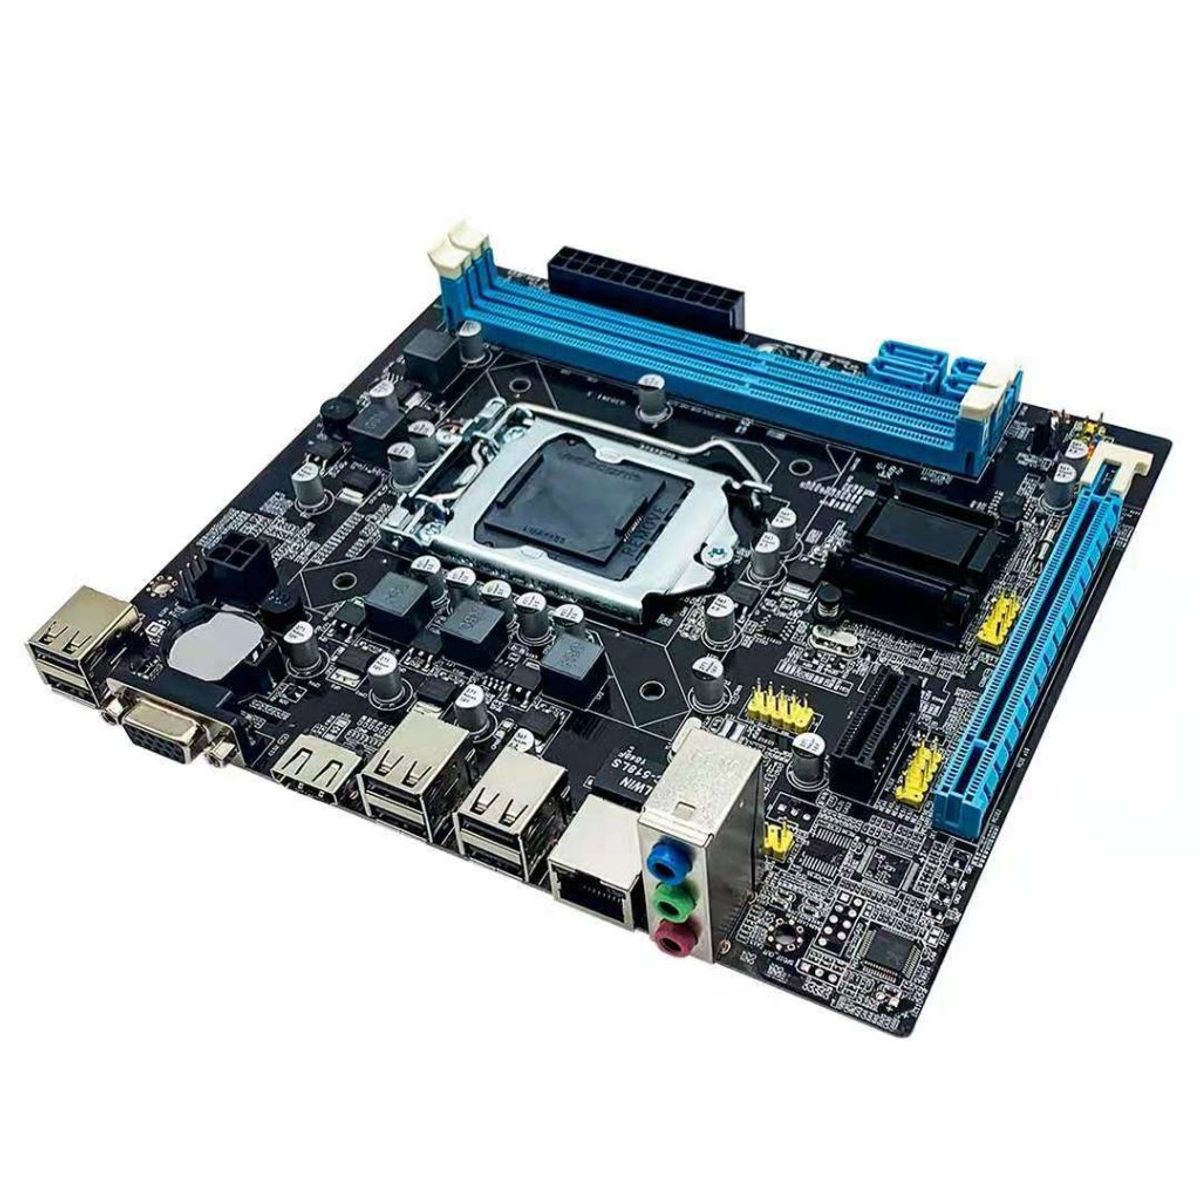 Placa-Mãe Isync CYB-21-GB75 LGA 1155 DDR3 mATX HDMI/VGA - Ibyte